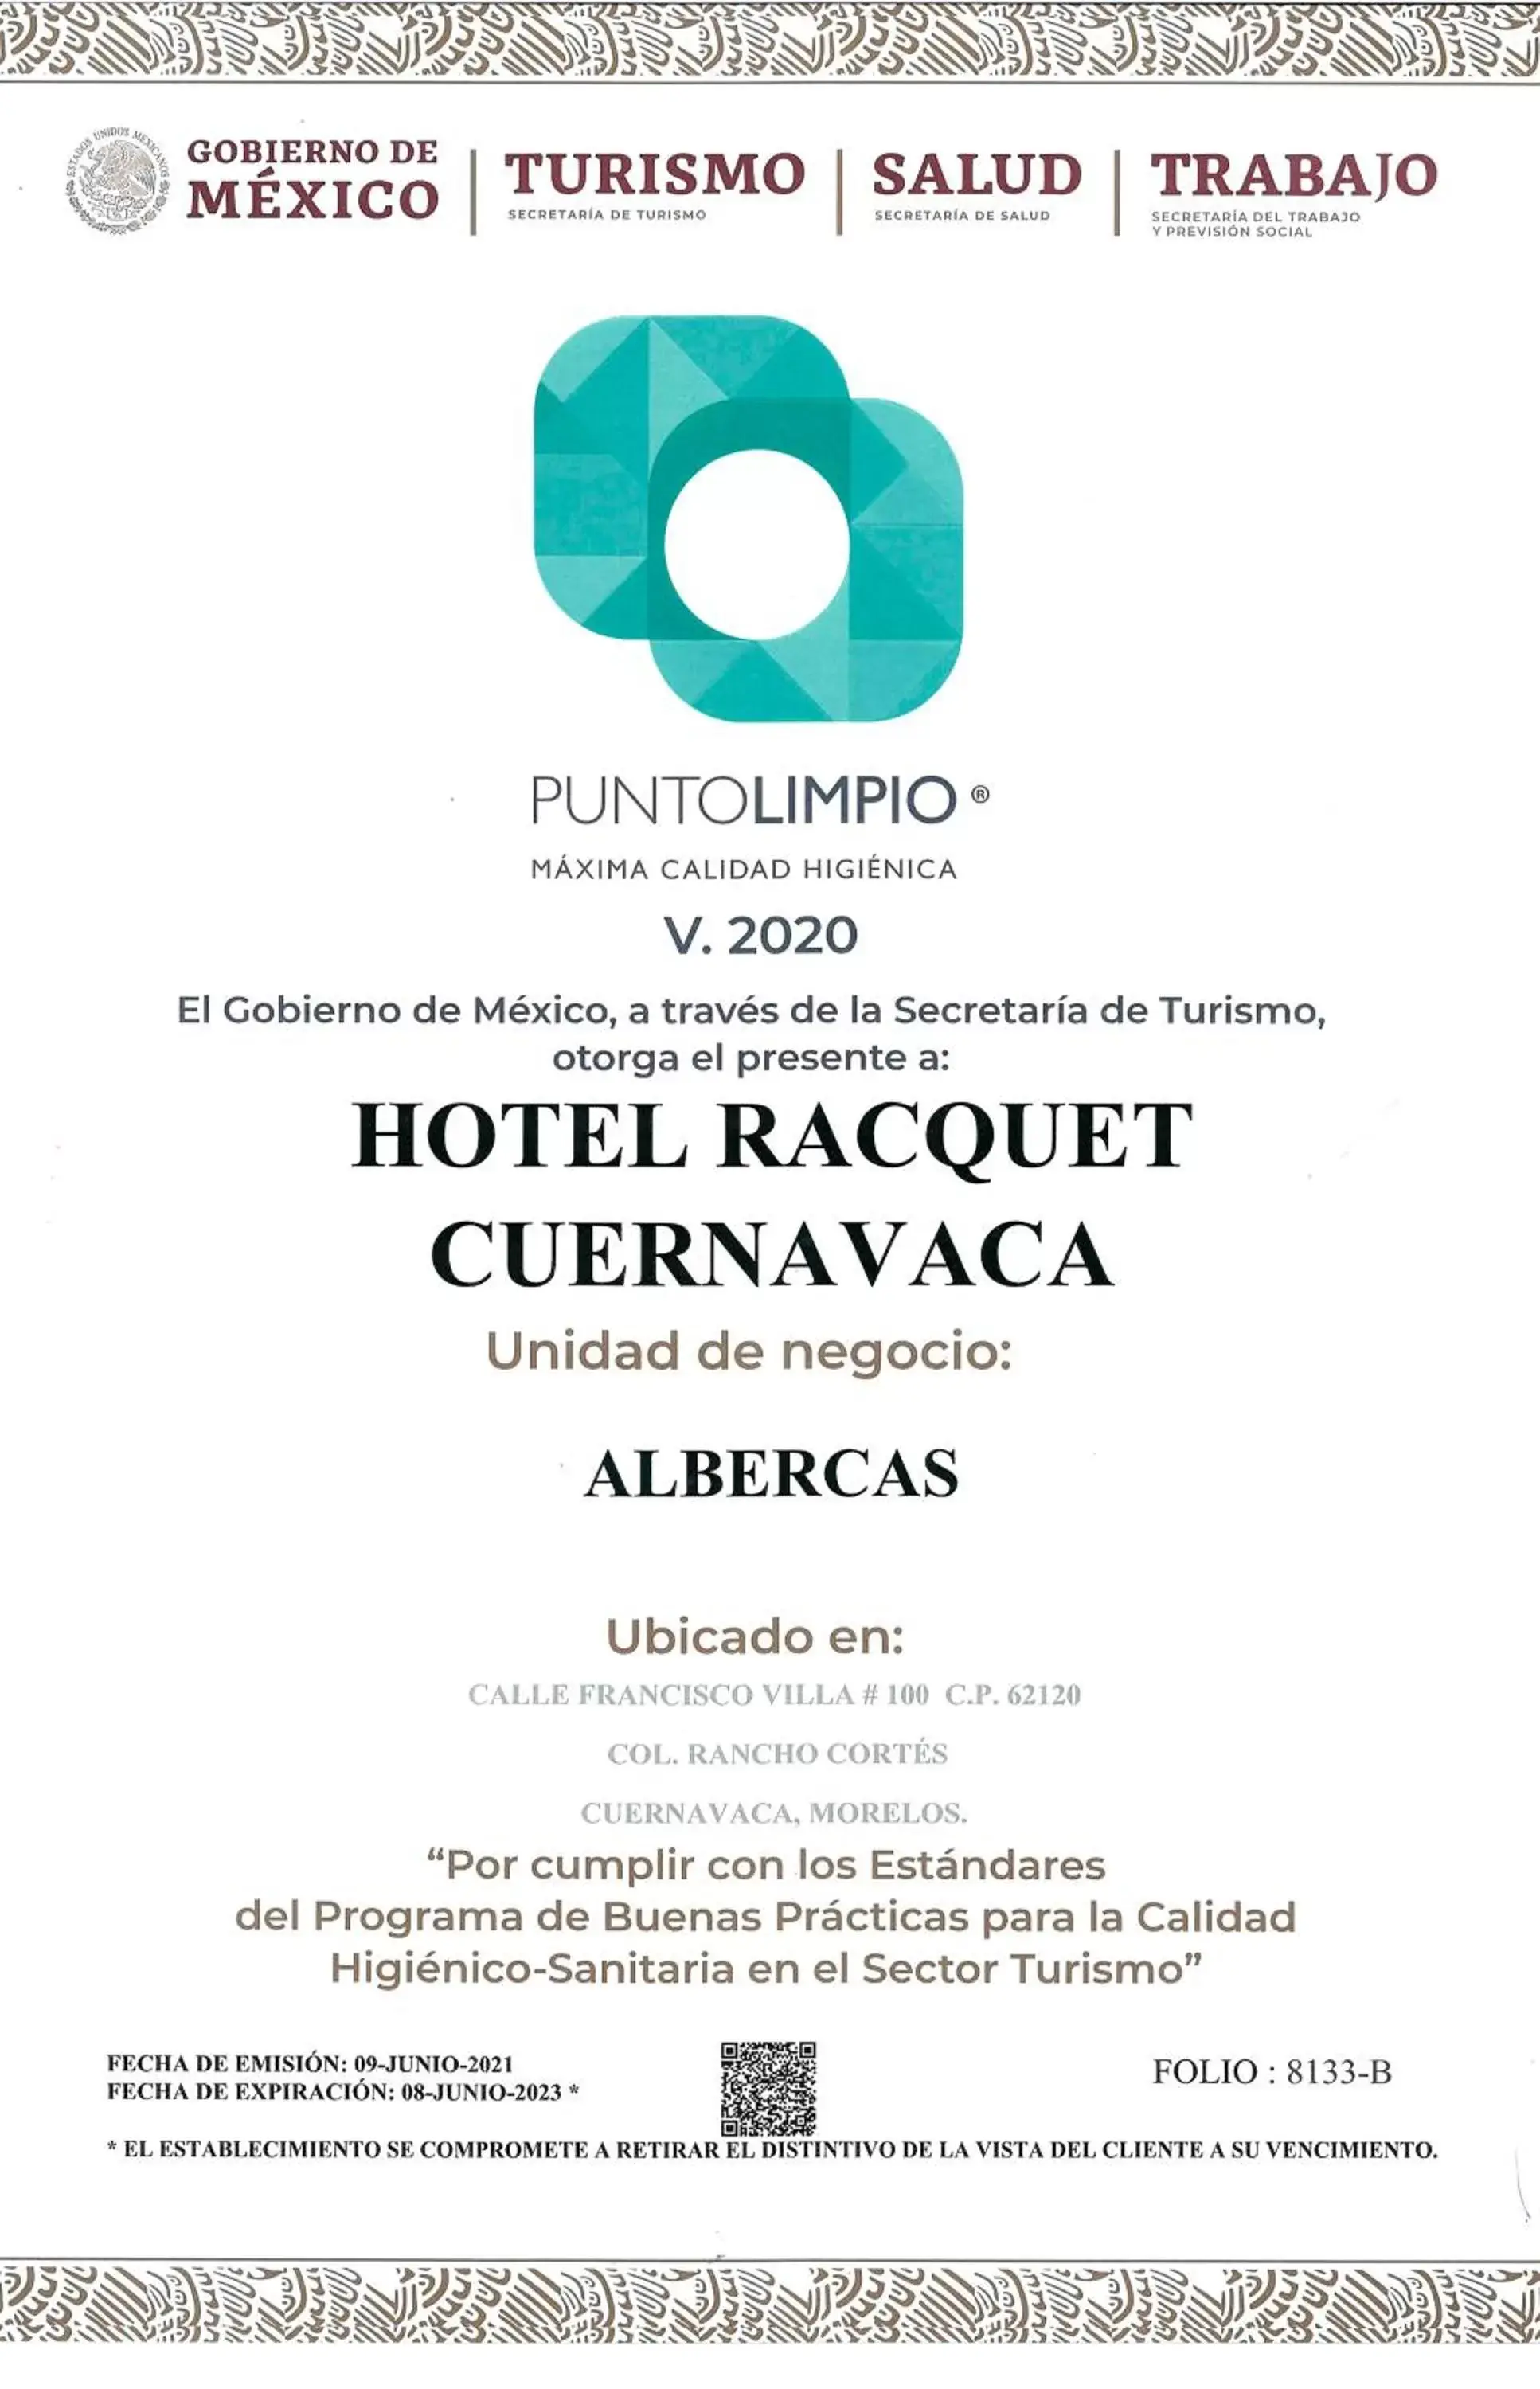 Certificate/Award in Hotel Racquet Cuernavaca